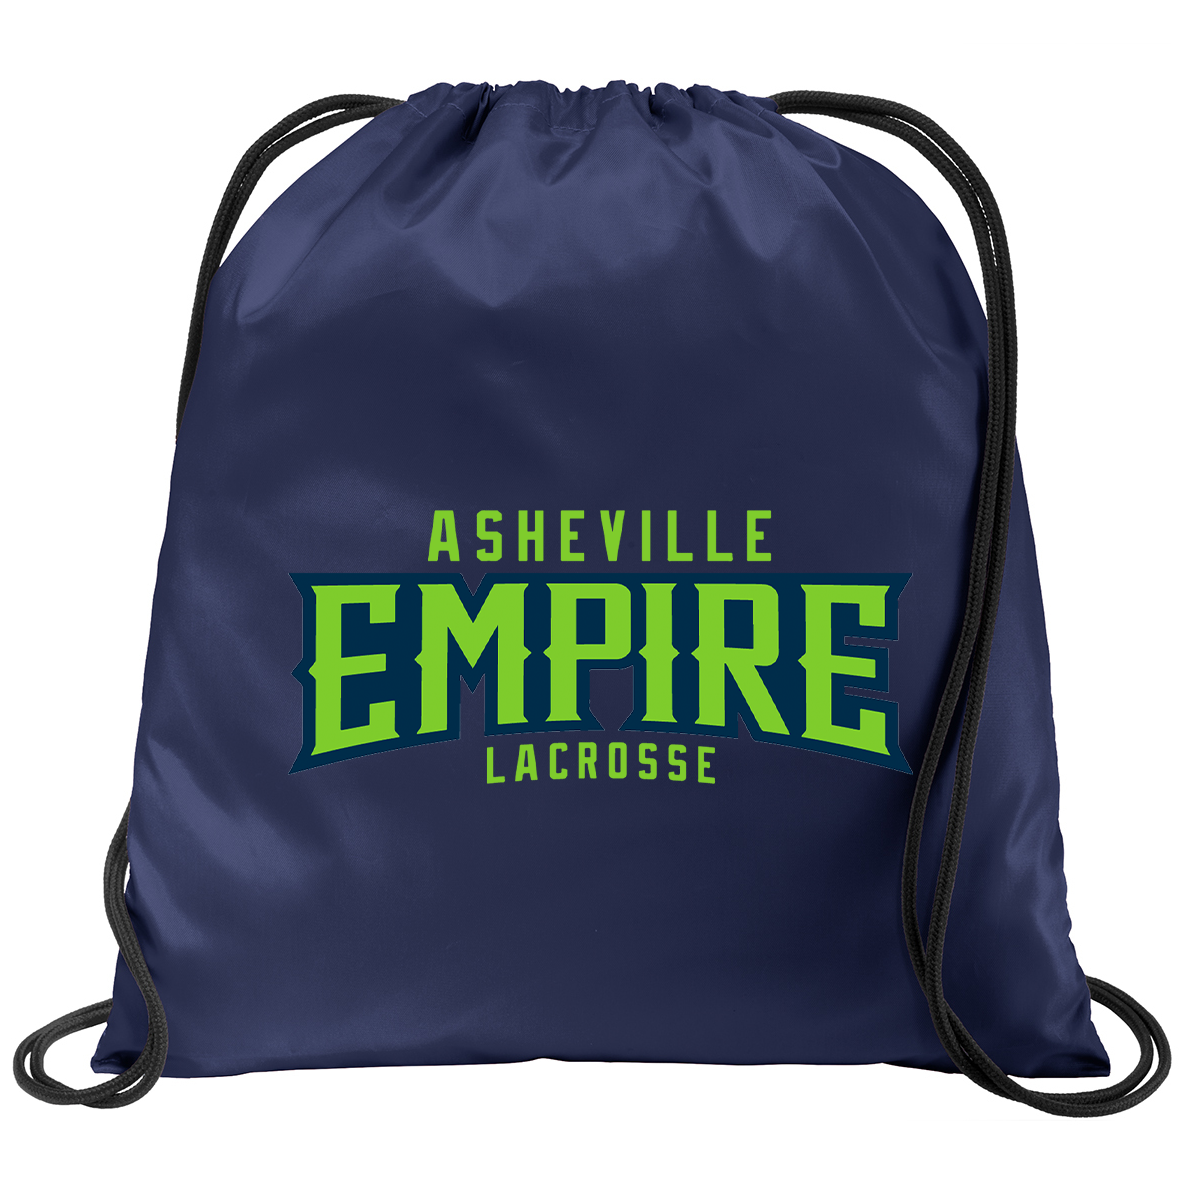 Asheville Empire Lacrosse Cinch Pack